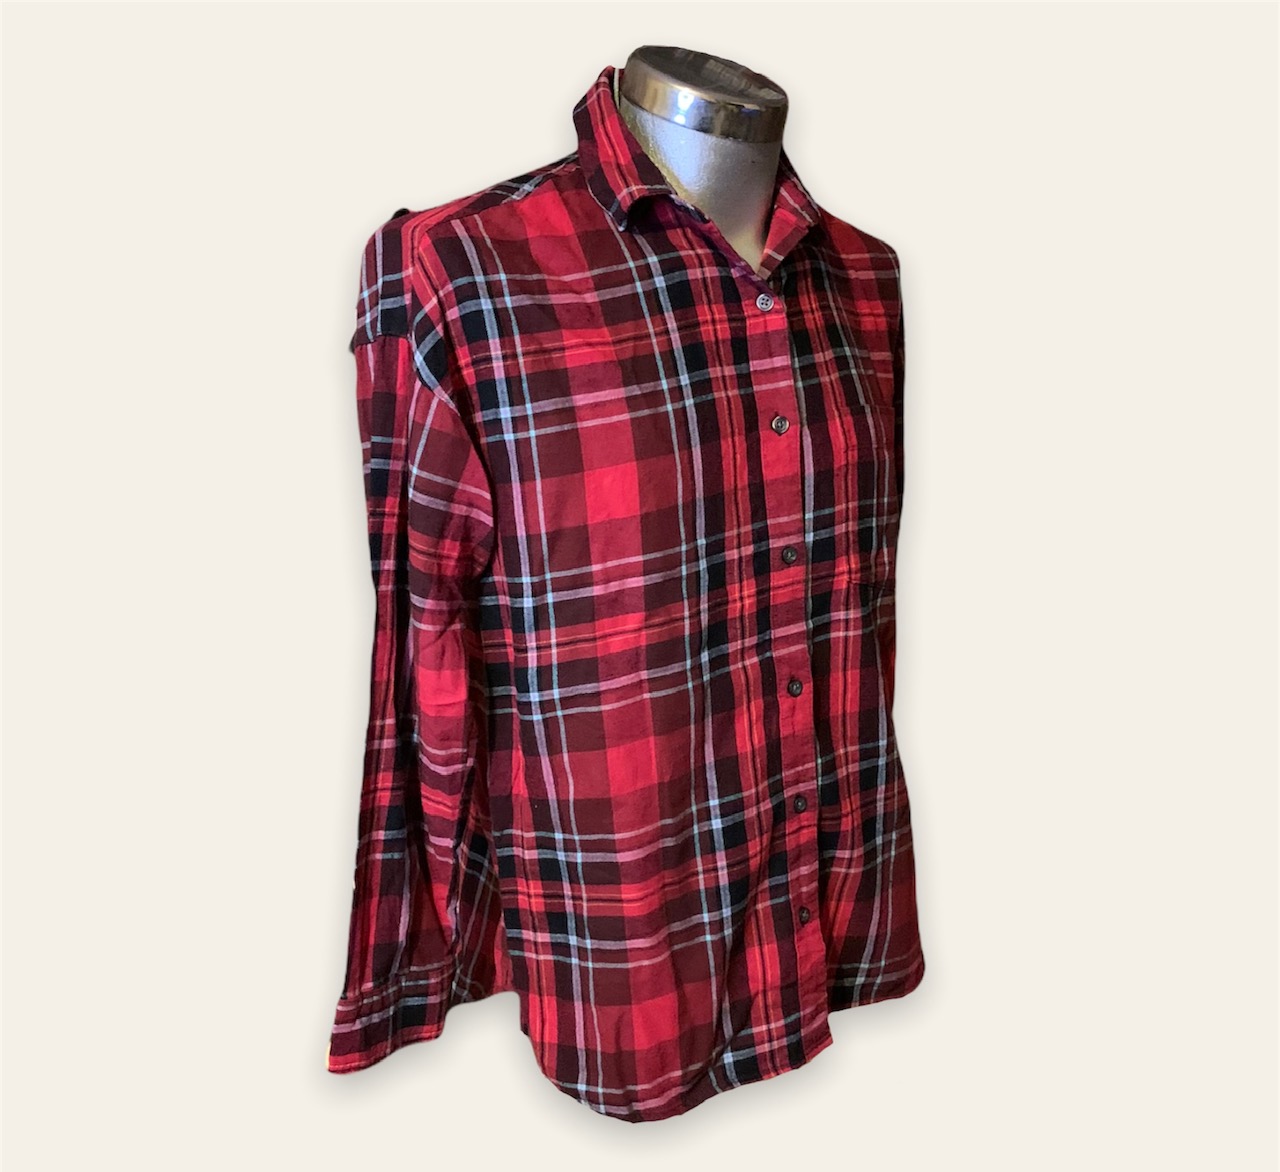 Aplaudir coser solitario Camisa a cuadros roja con negro Marca Old Navy Unisex - Glow Fashion